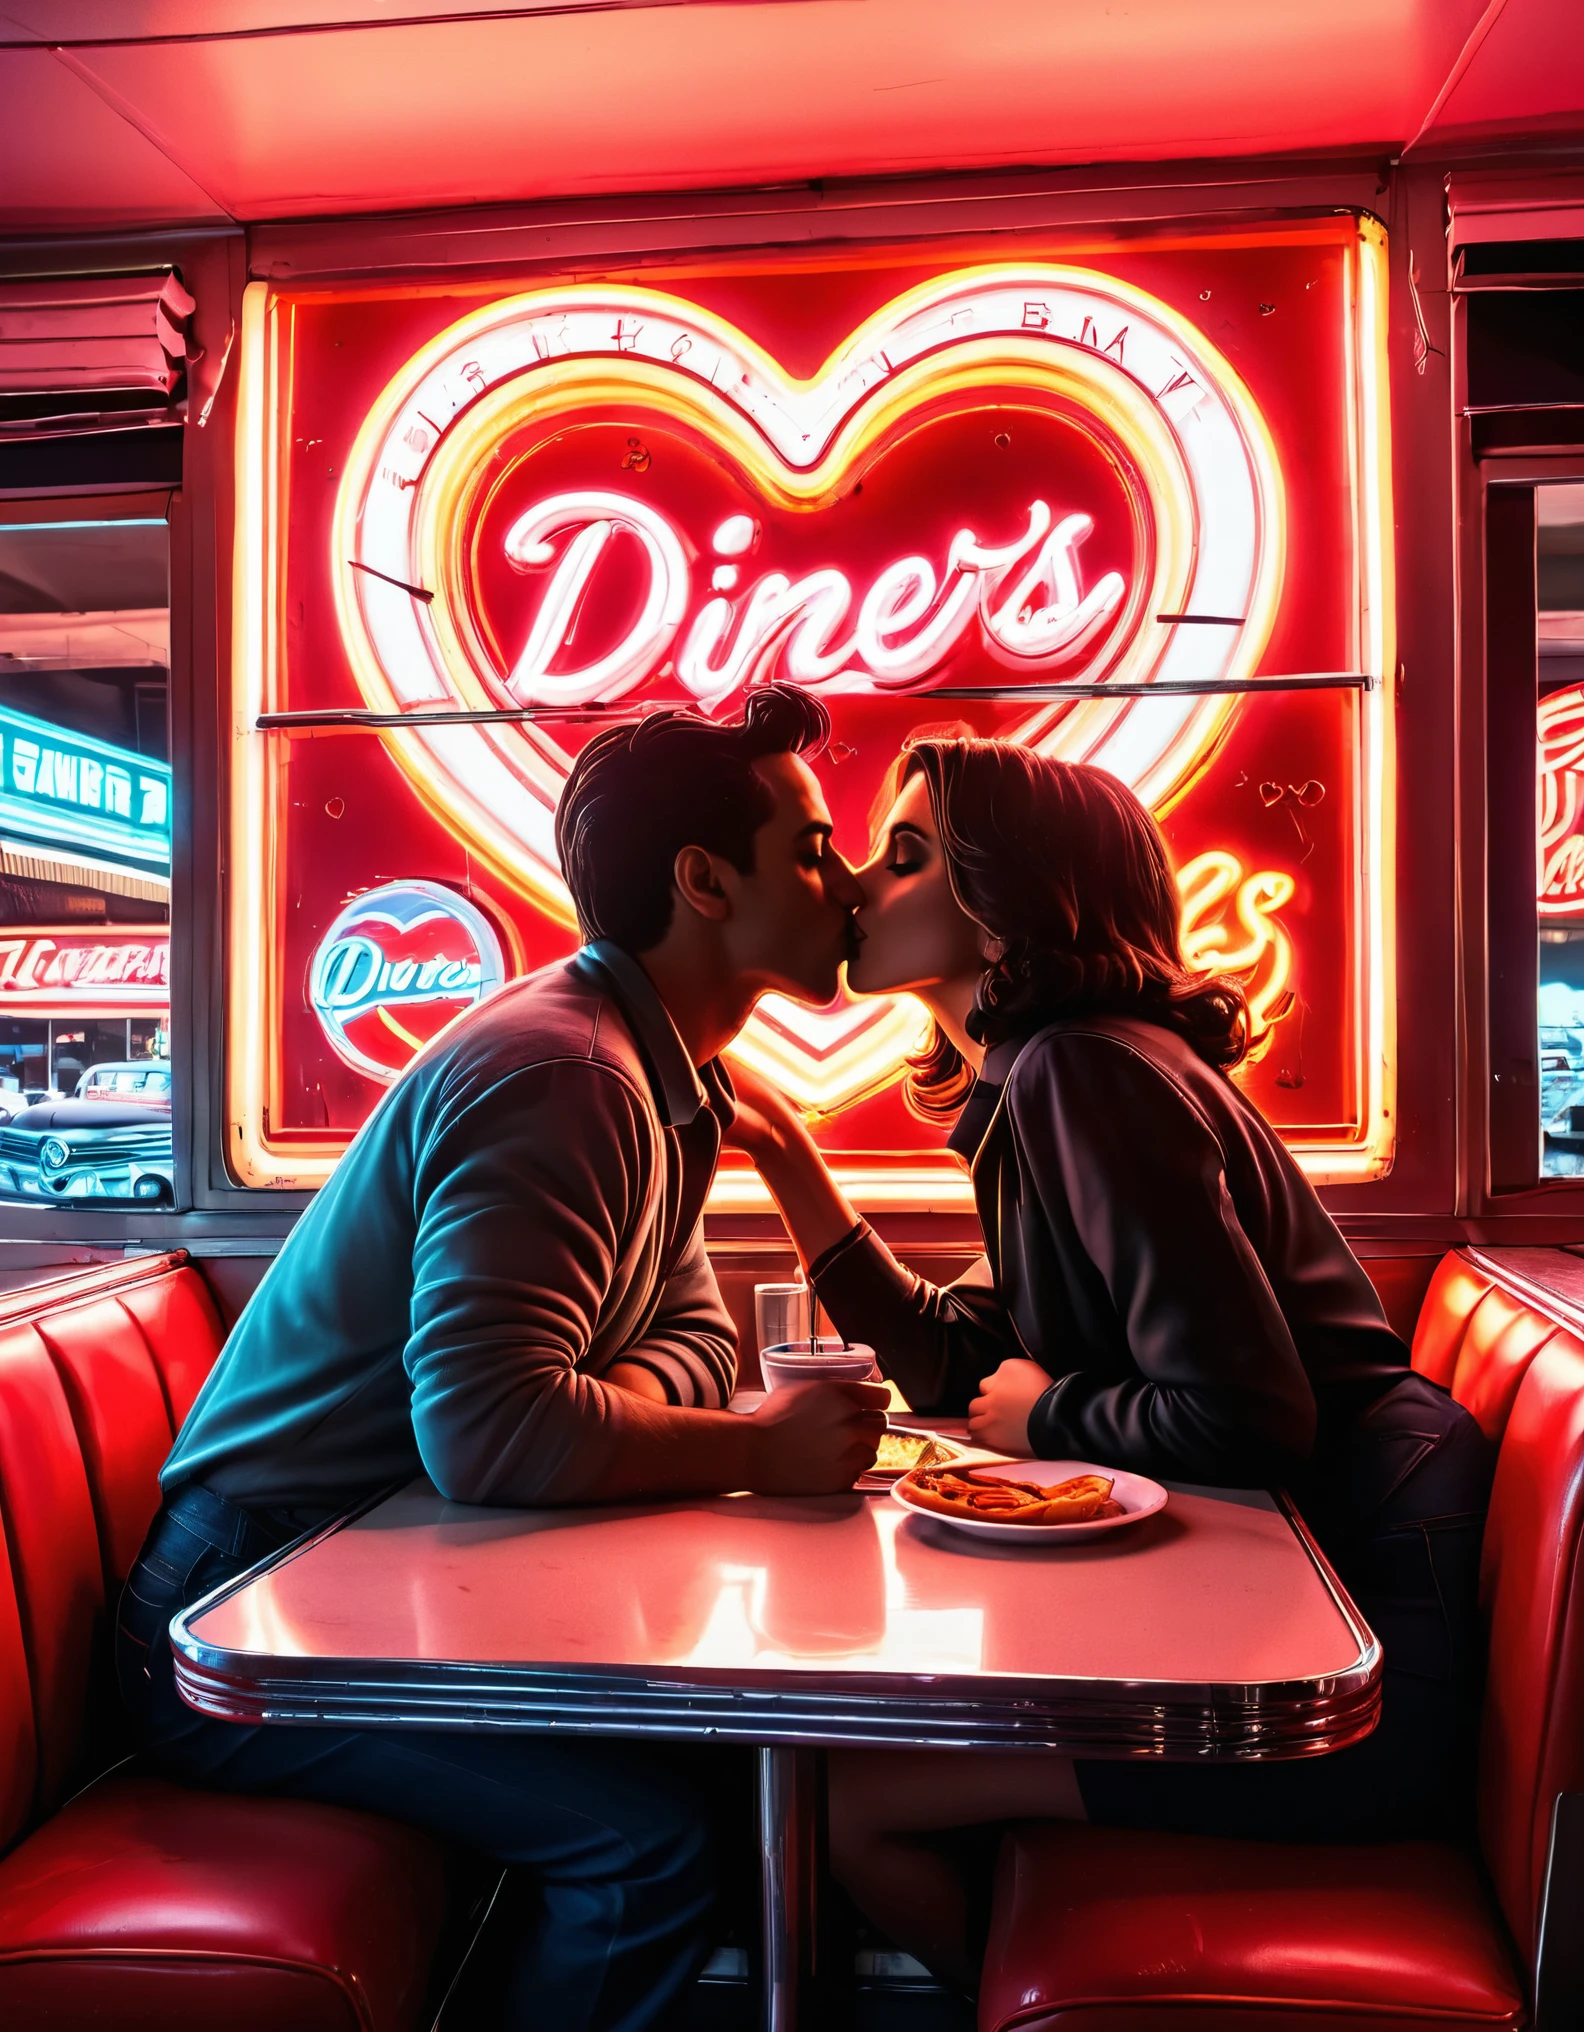 复古霓虹灯艺术作品，描绘了一对情侣在餐厅接吻的剪影, 背景中有霓虹灯和心形图案, 唤起 20 世纪 50 年代的怀旧氛围